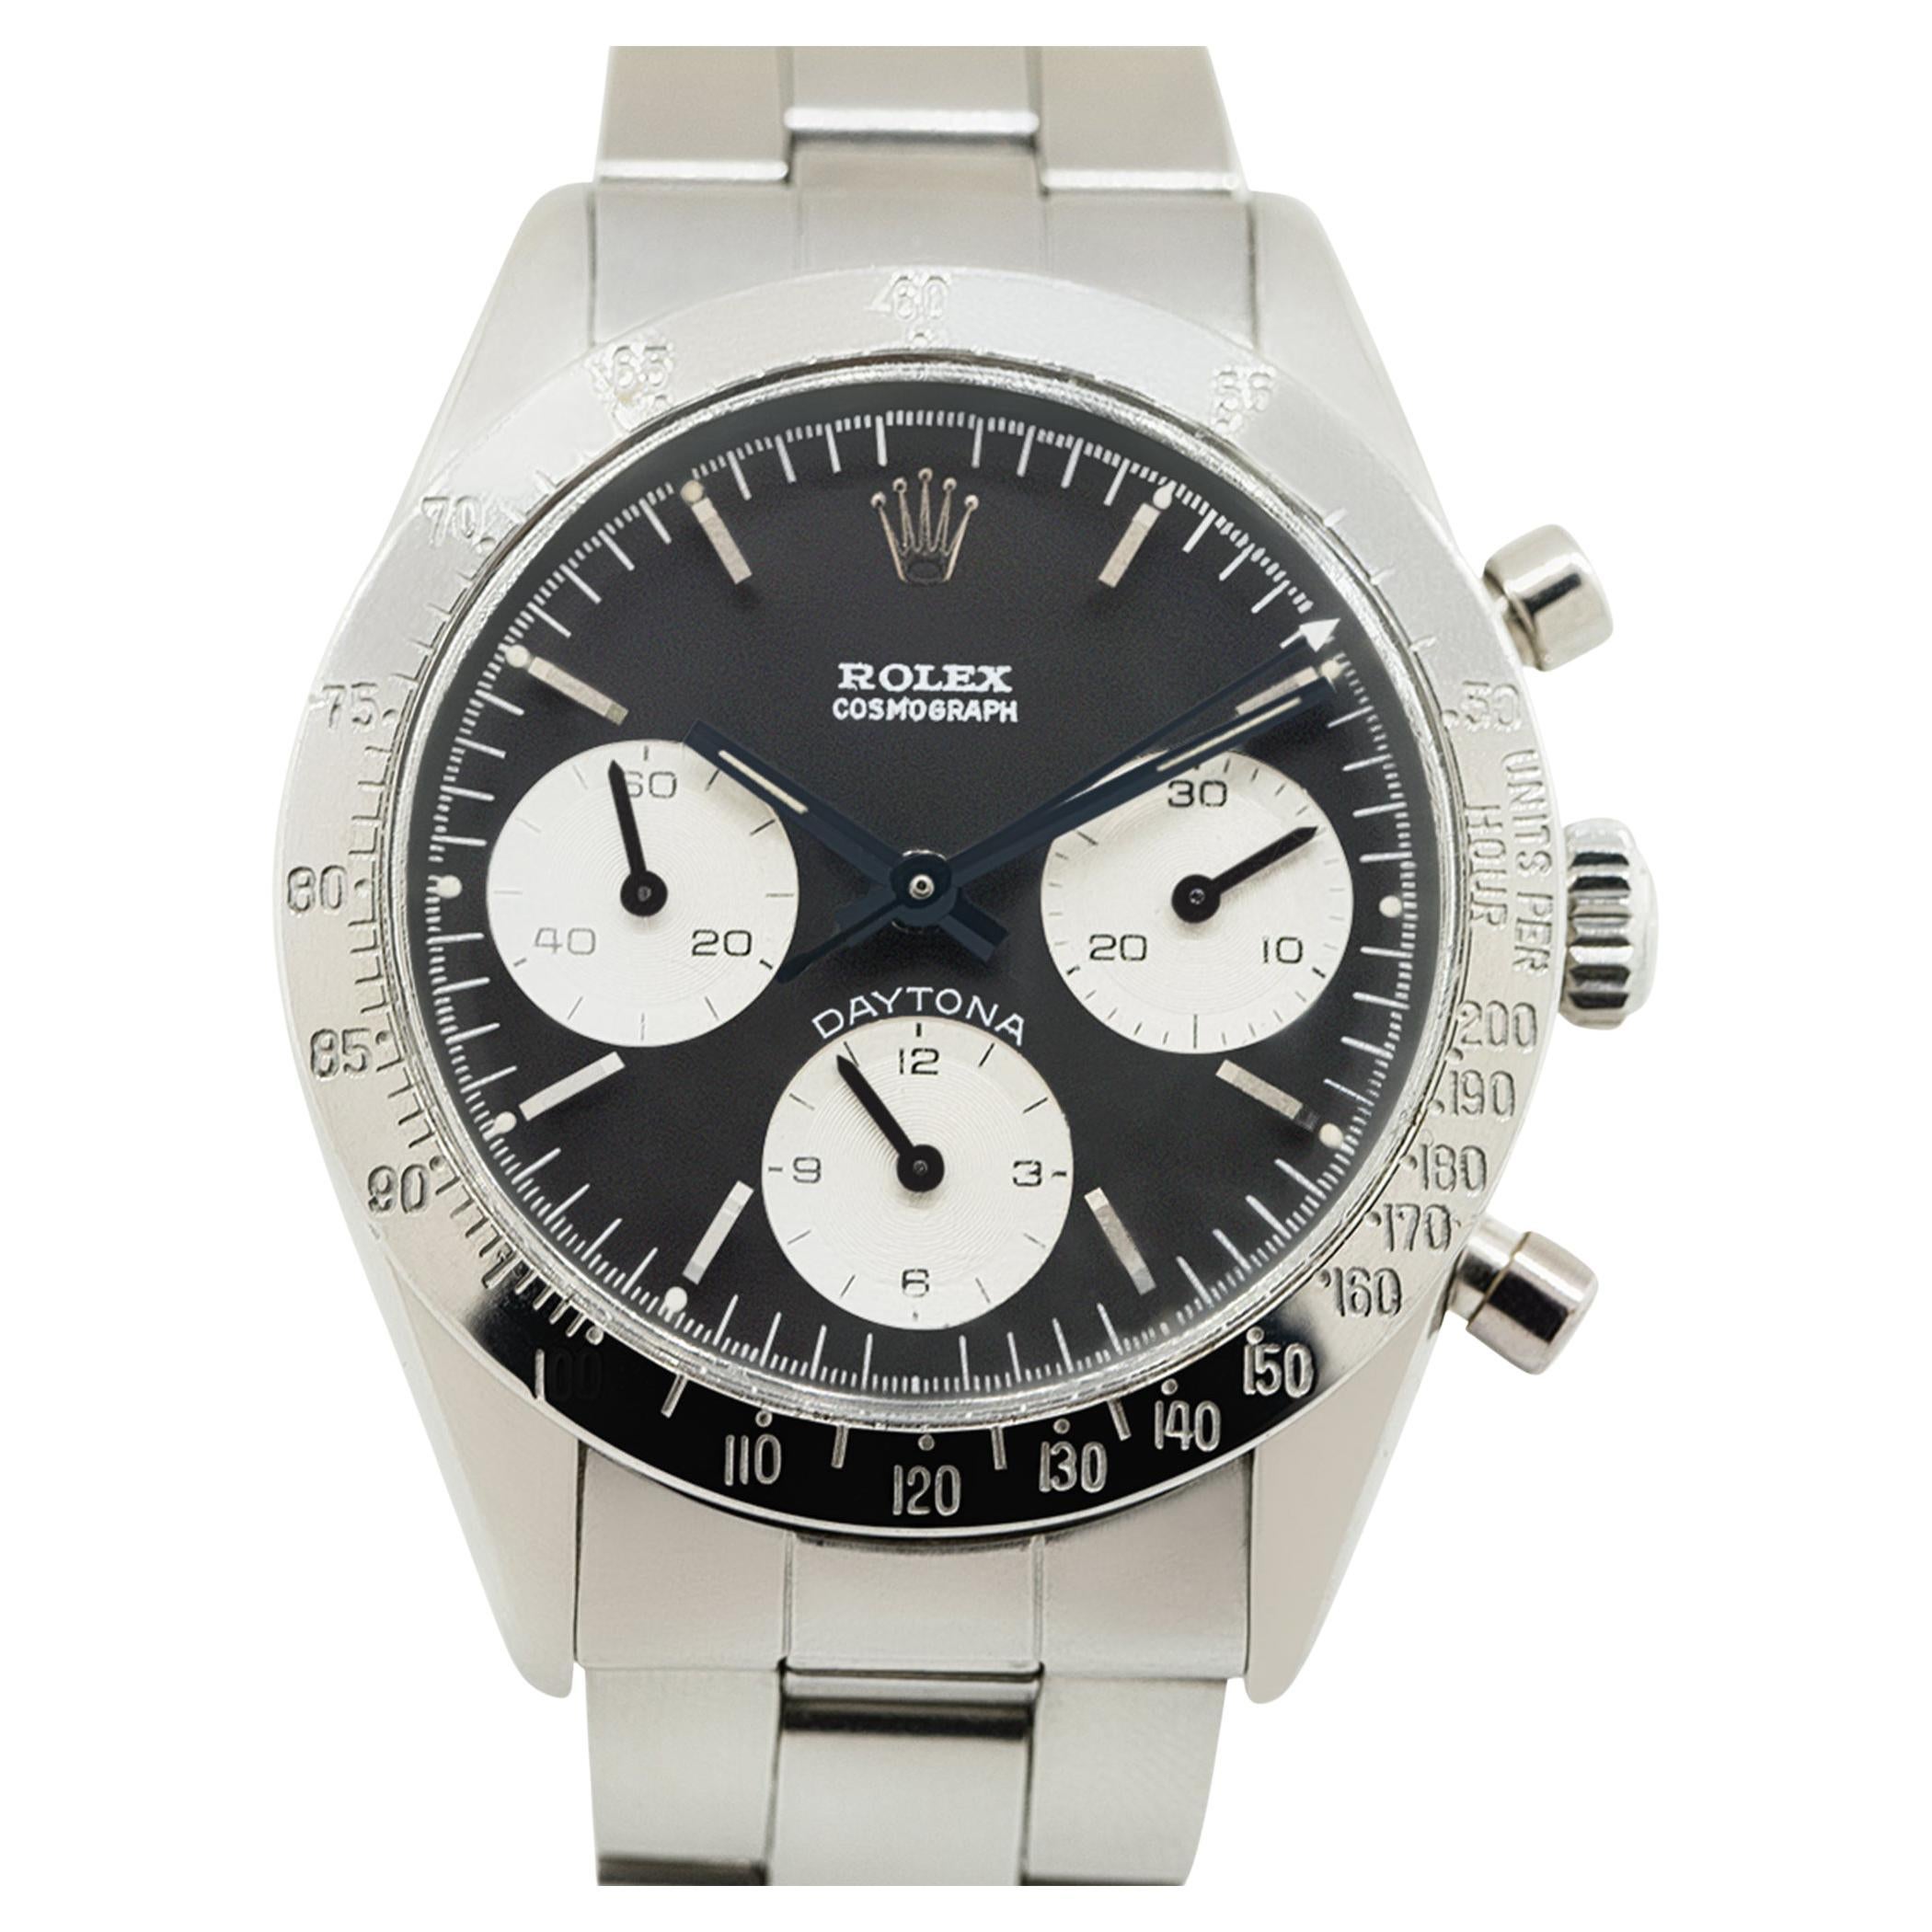 Reloj Rolex 6239 Daytona Acero Inoxidable en Stock